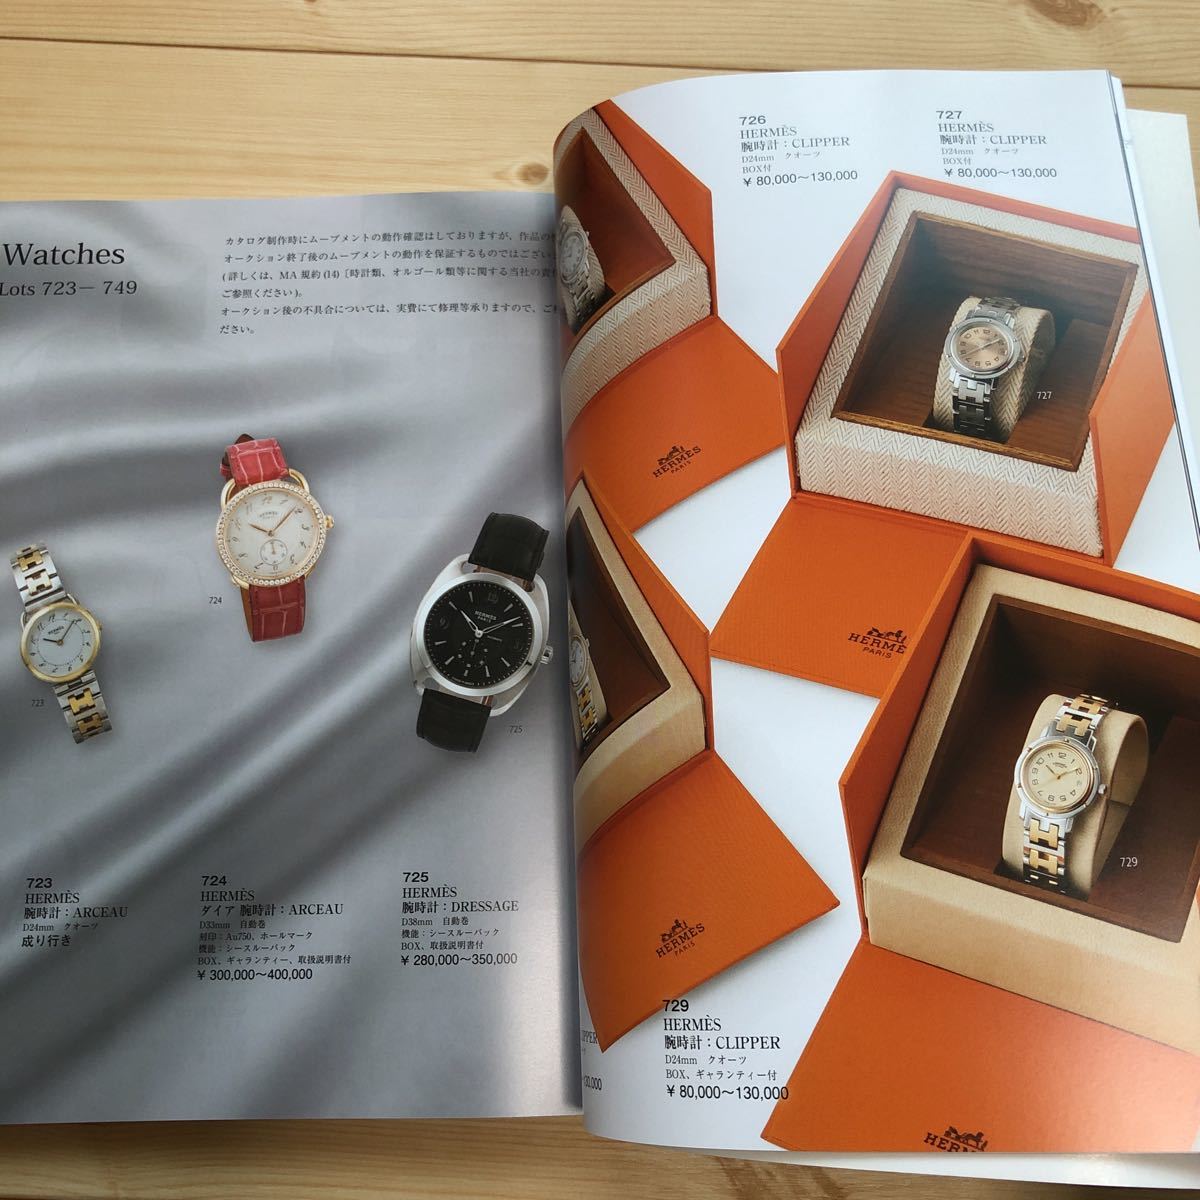 * каждый день аукцион каталог 698 не продается JEWELRY&WATCHES драгоценнный камень часы каталог только 